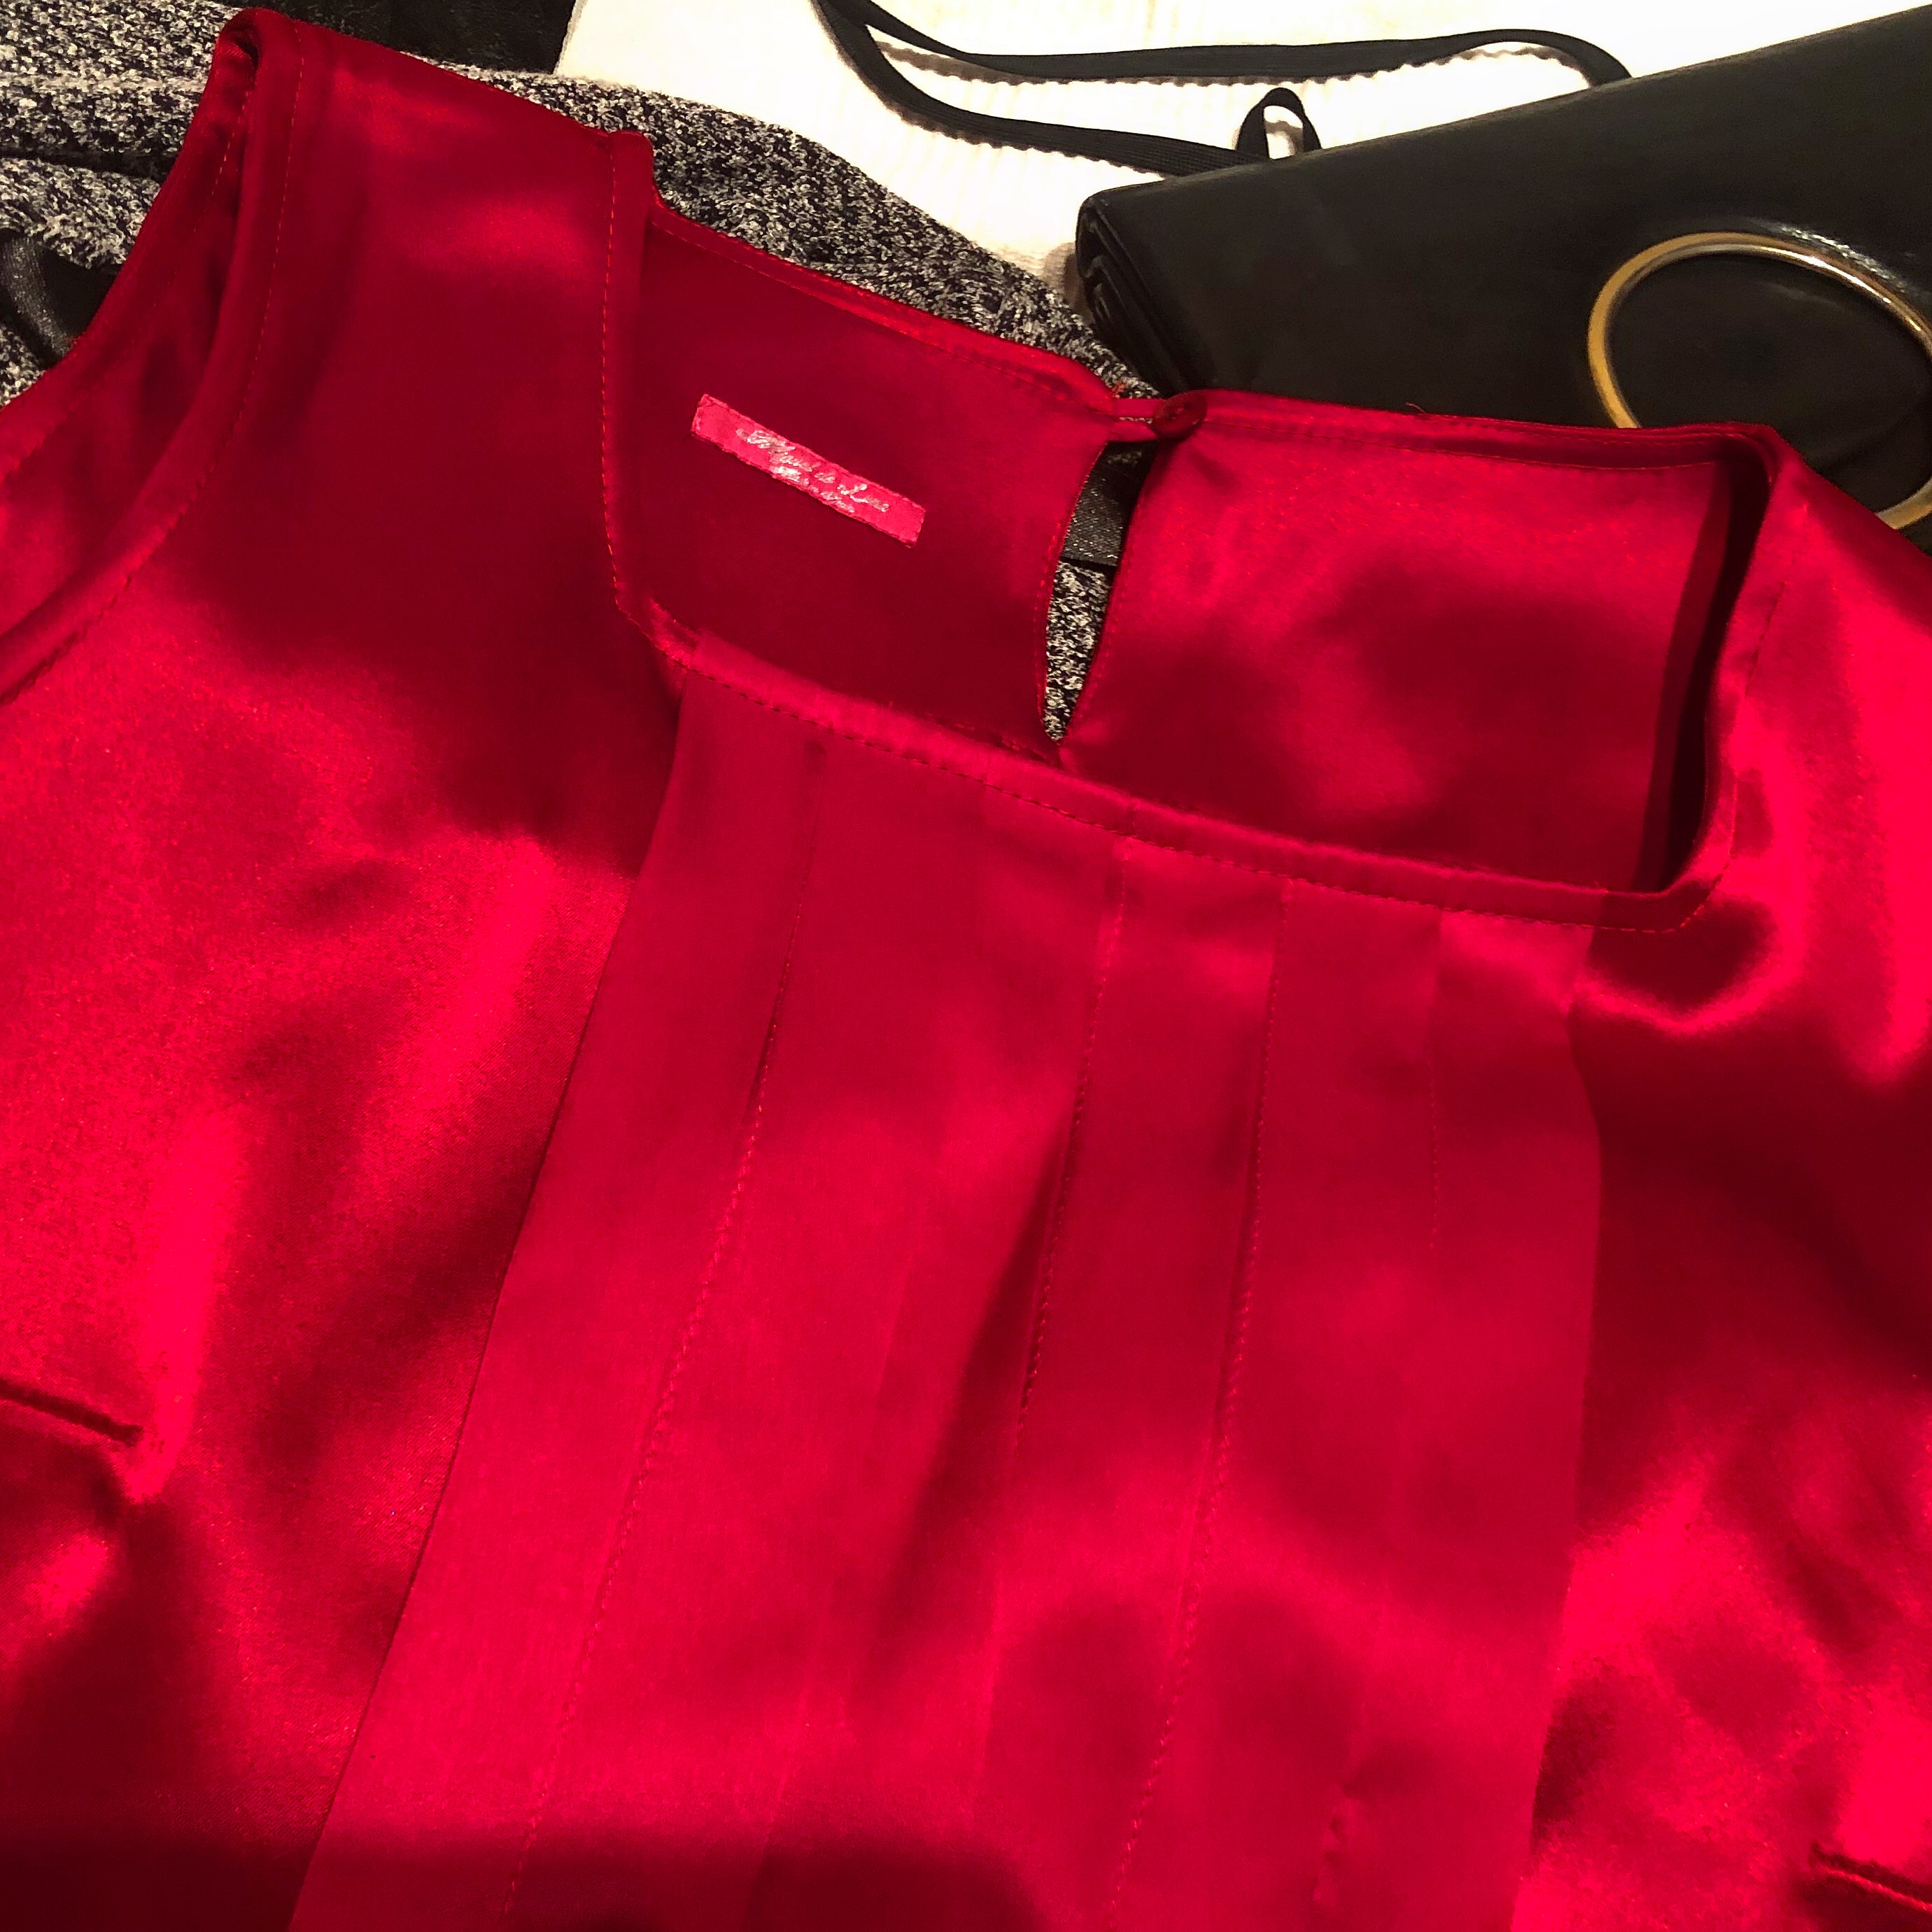 Os atreveríais con este vestido rojo de #migueldeluna ? Qué opináis?